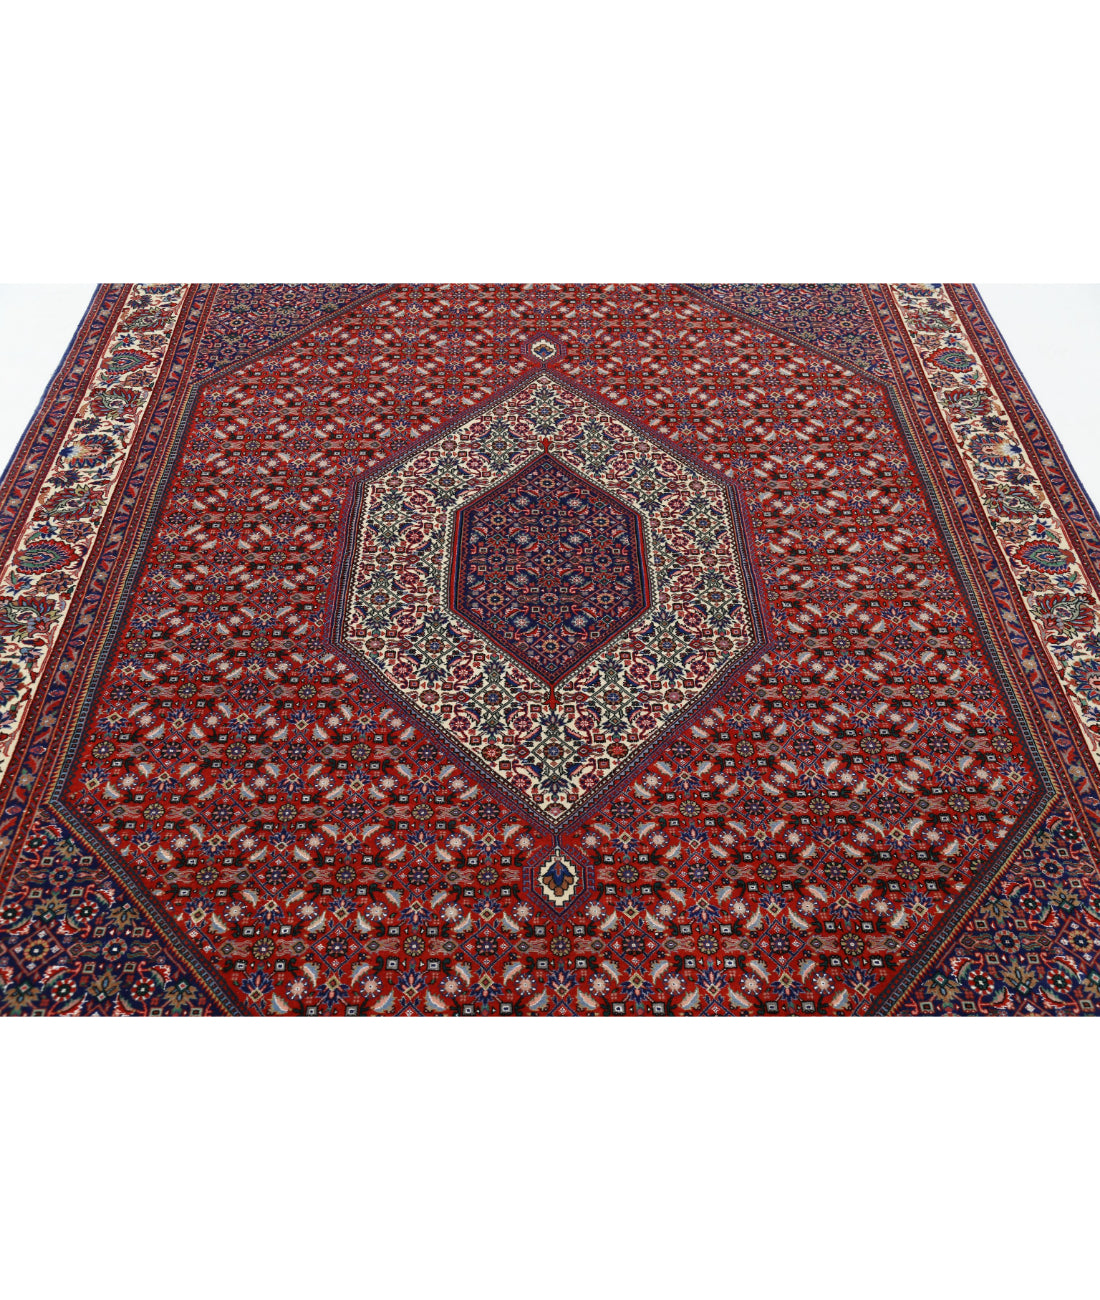 Hand Knotted Persian Bijar Wool & Silk Rug - 6'7'' x 10'0'' 6'7'' x 10'0'' (198 X 300) / Red / Ivory